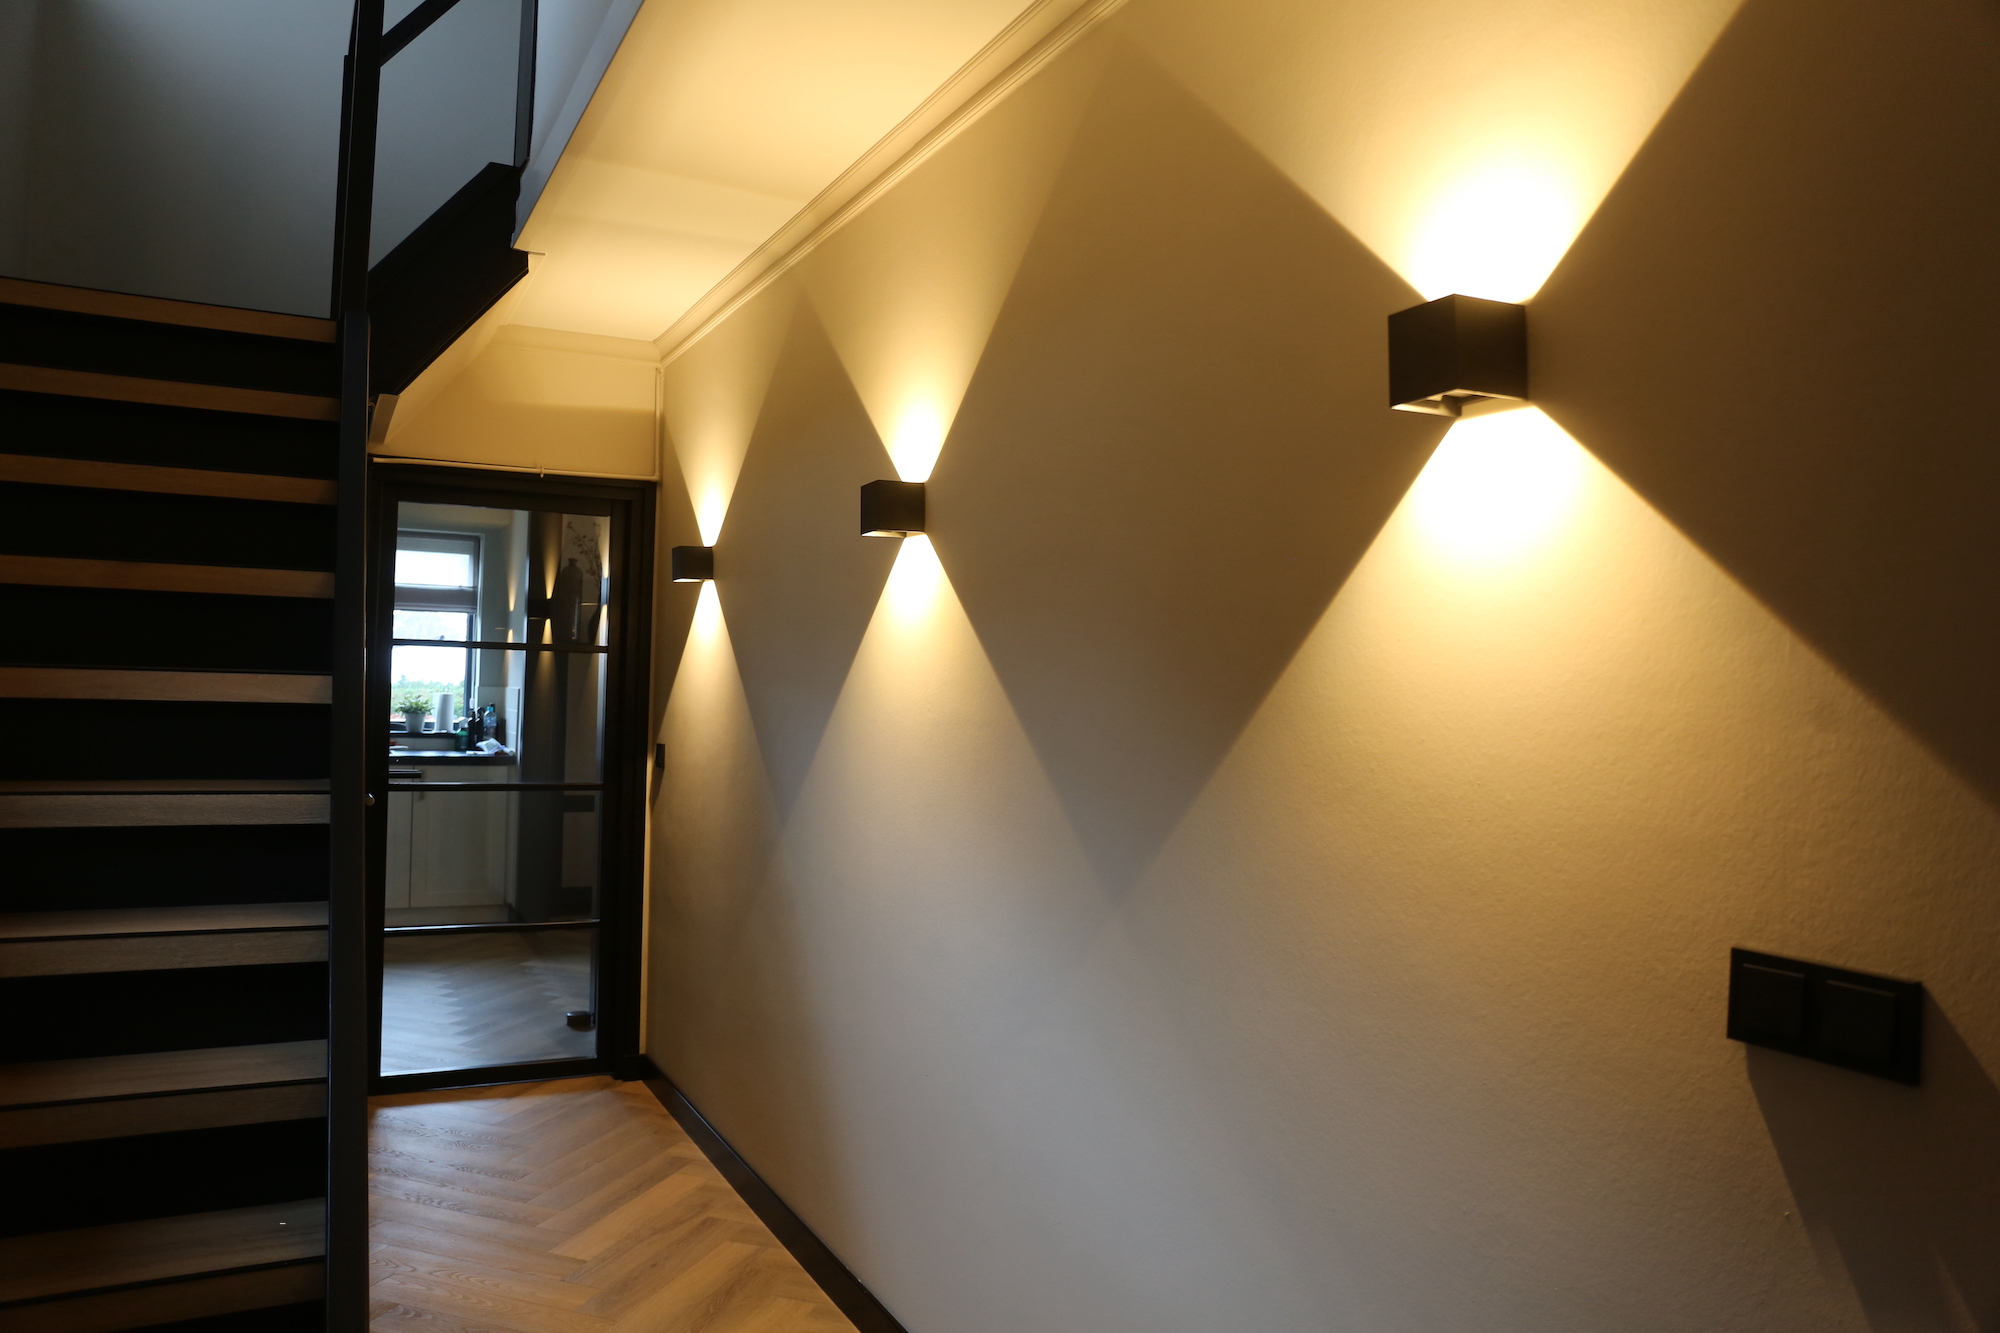 LightToday heeft voor een jong gezin uit Apeldoorn het lichtontwerp en de technische uitwerking gemaakt voor hun nieuwe leefkeuken.